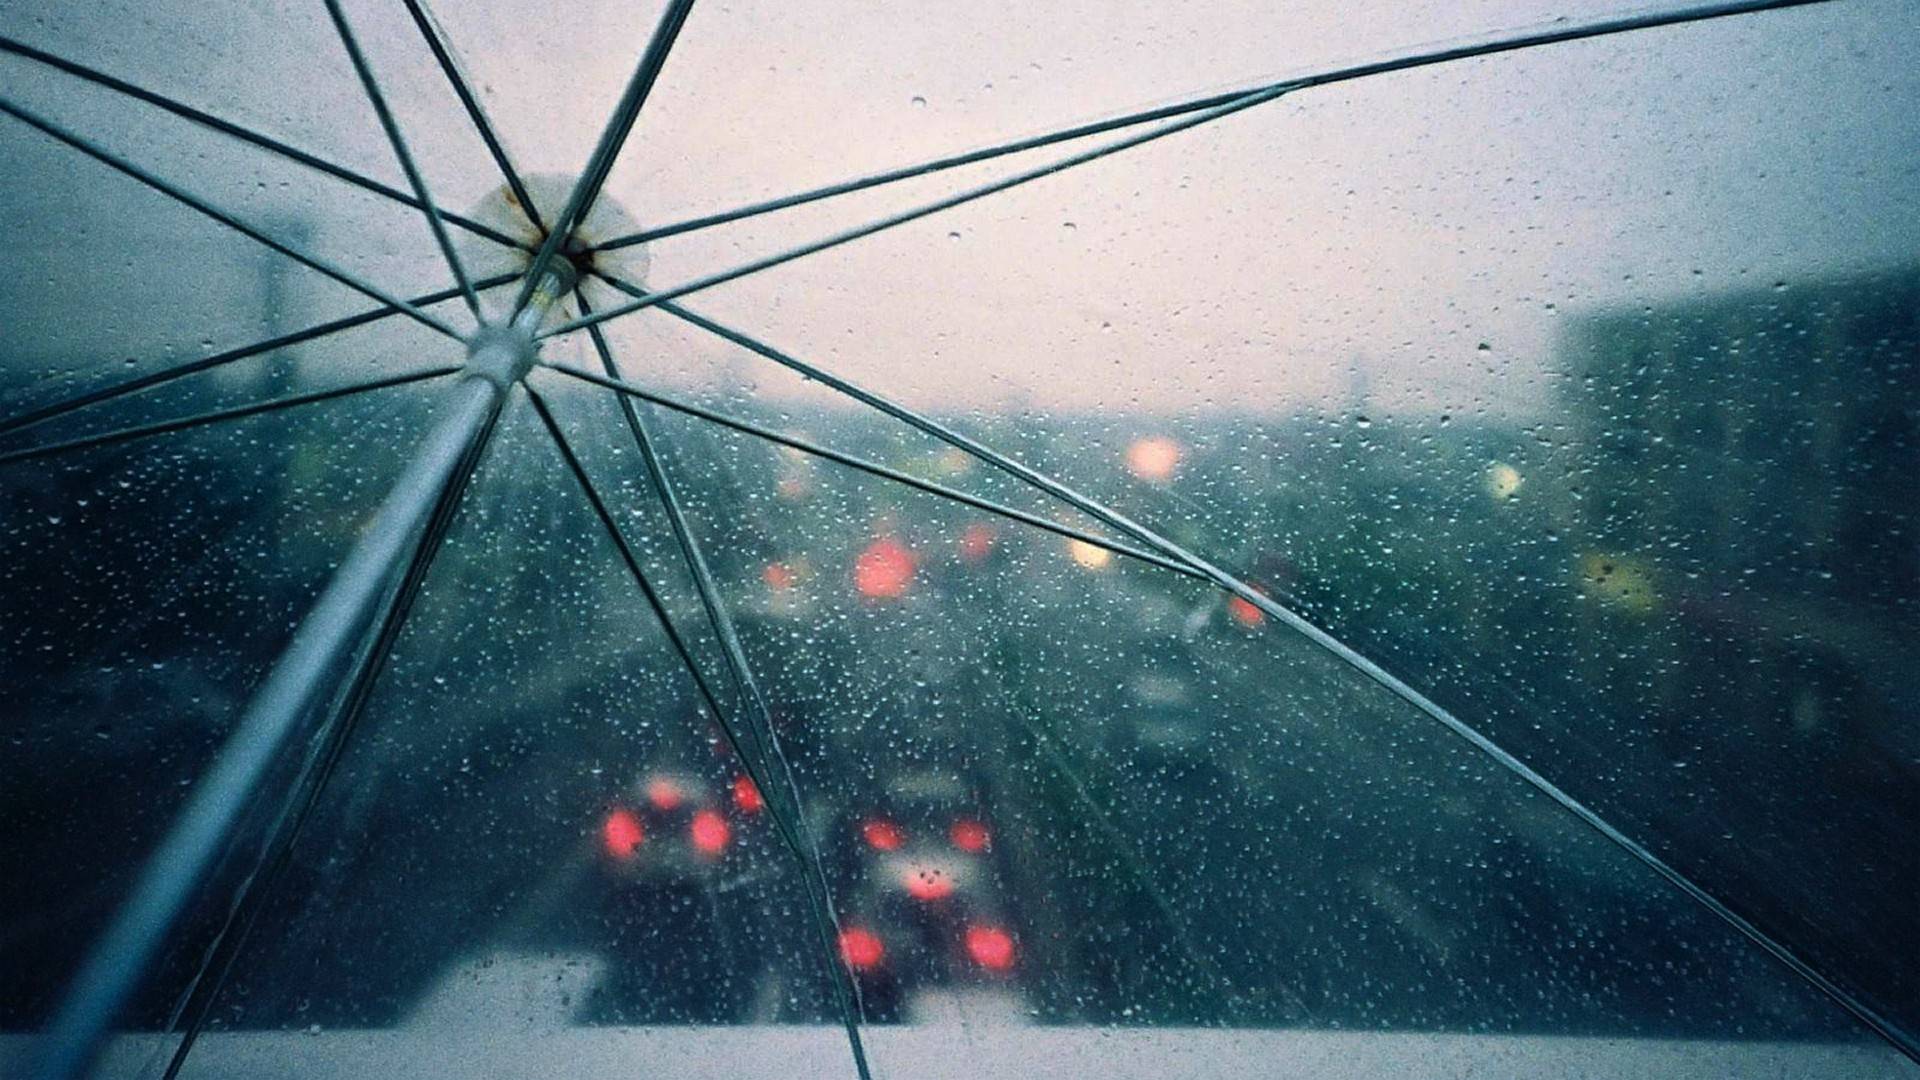 rainy images